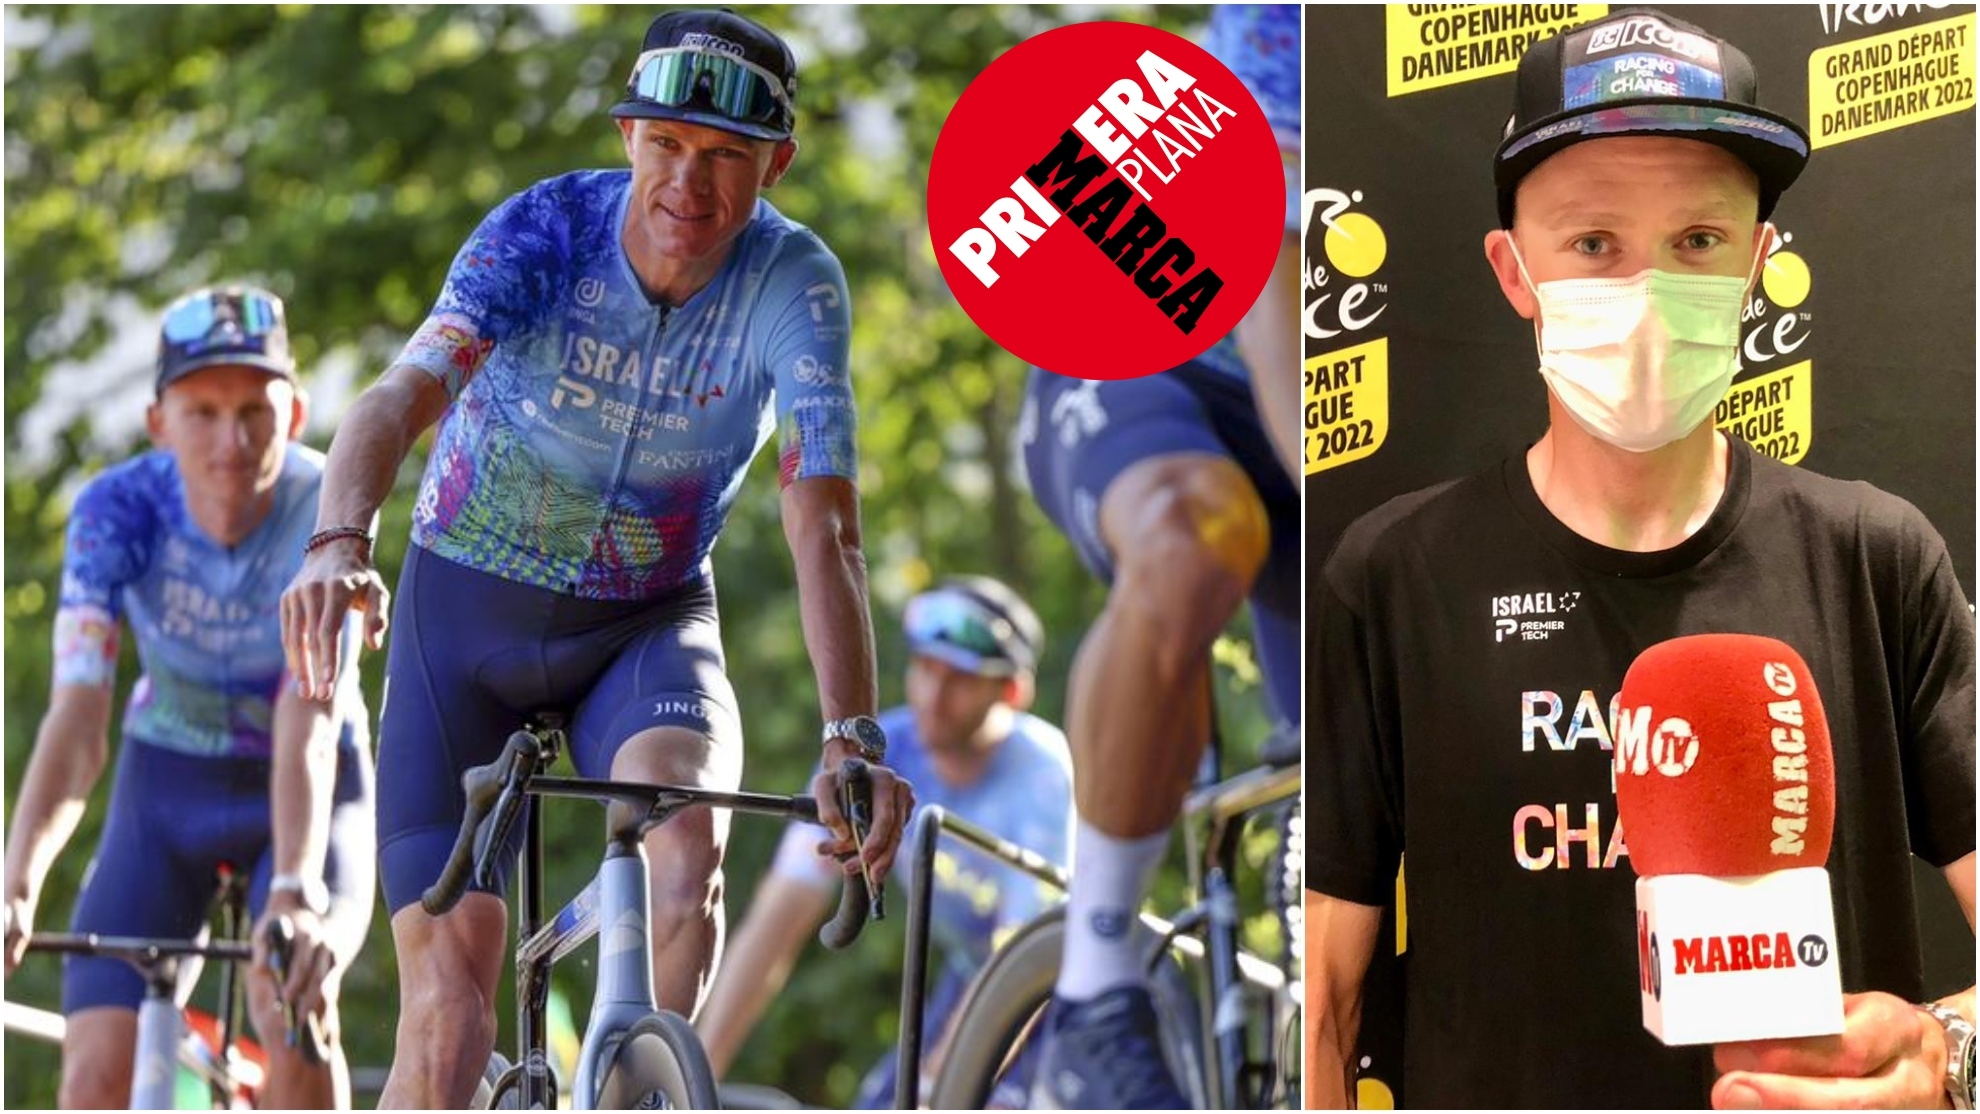 Montaje con Chris Froome en la presentacin del Tour de Francia en Copenhague y atendiendo a MARCA